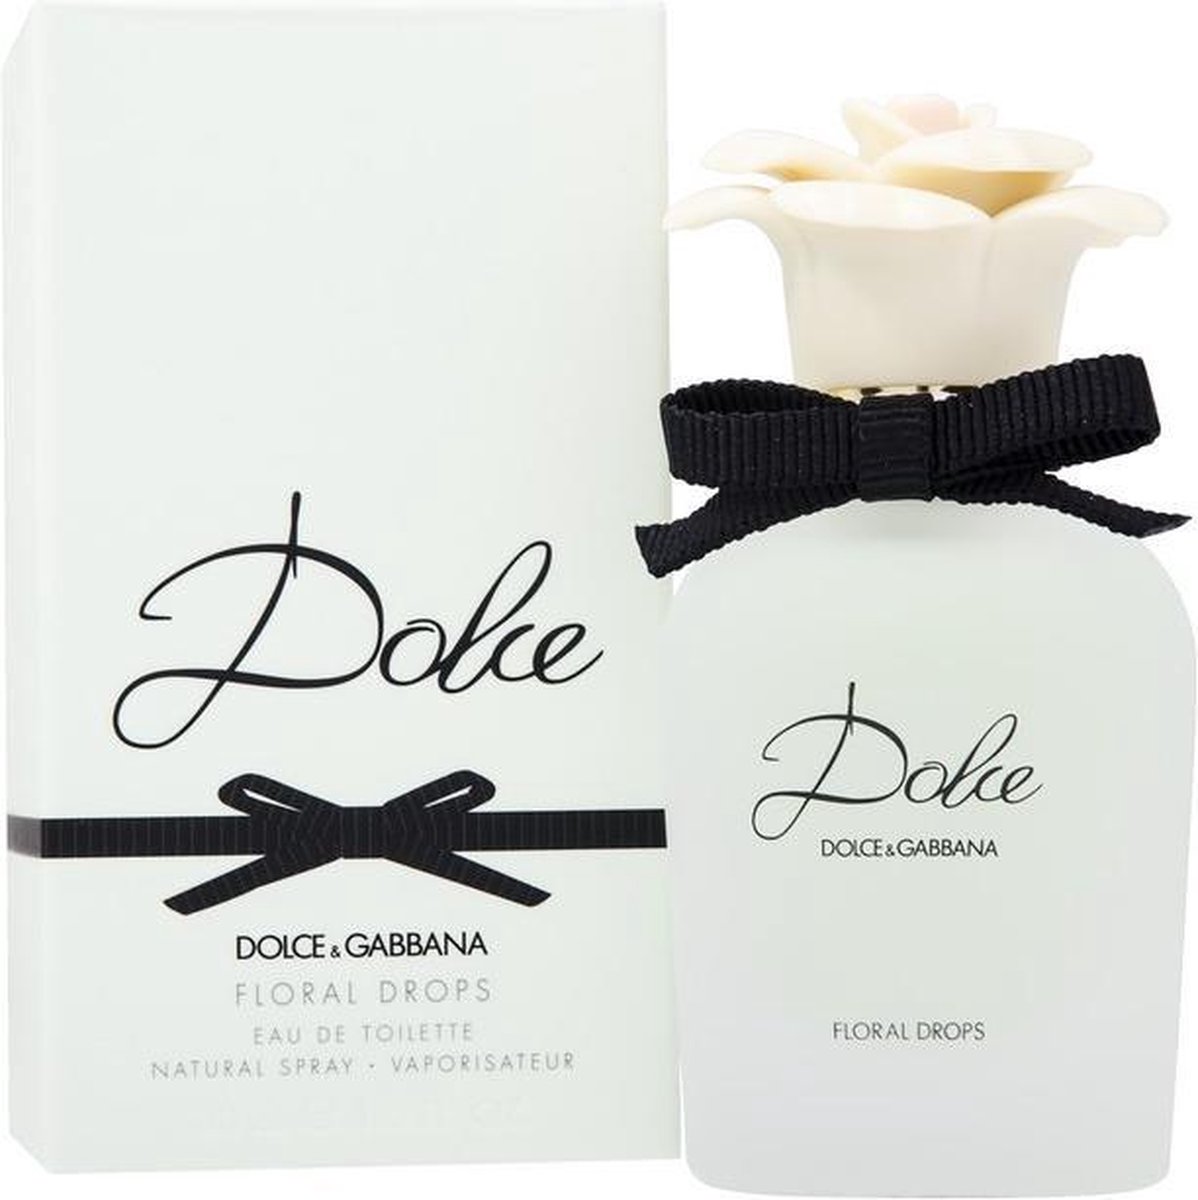 Dolce & Gabbana Floral Drops - 30 ml - Eau de toilette